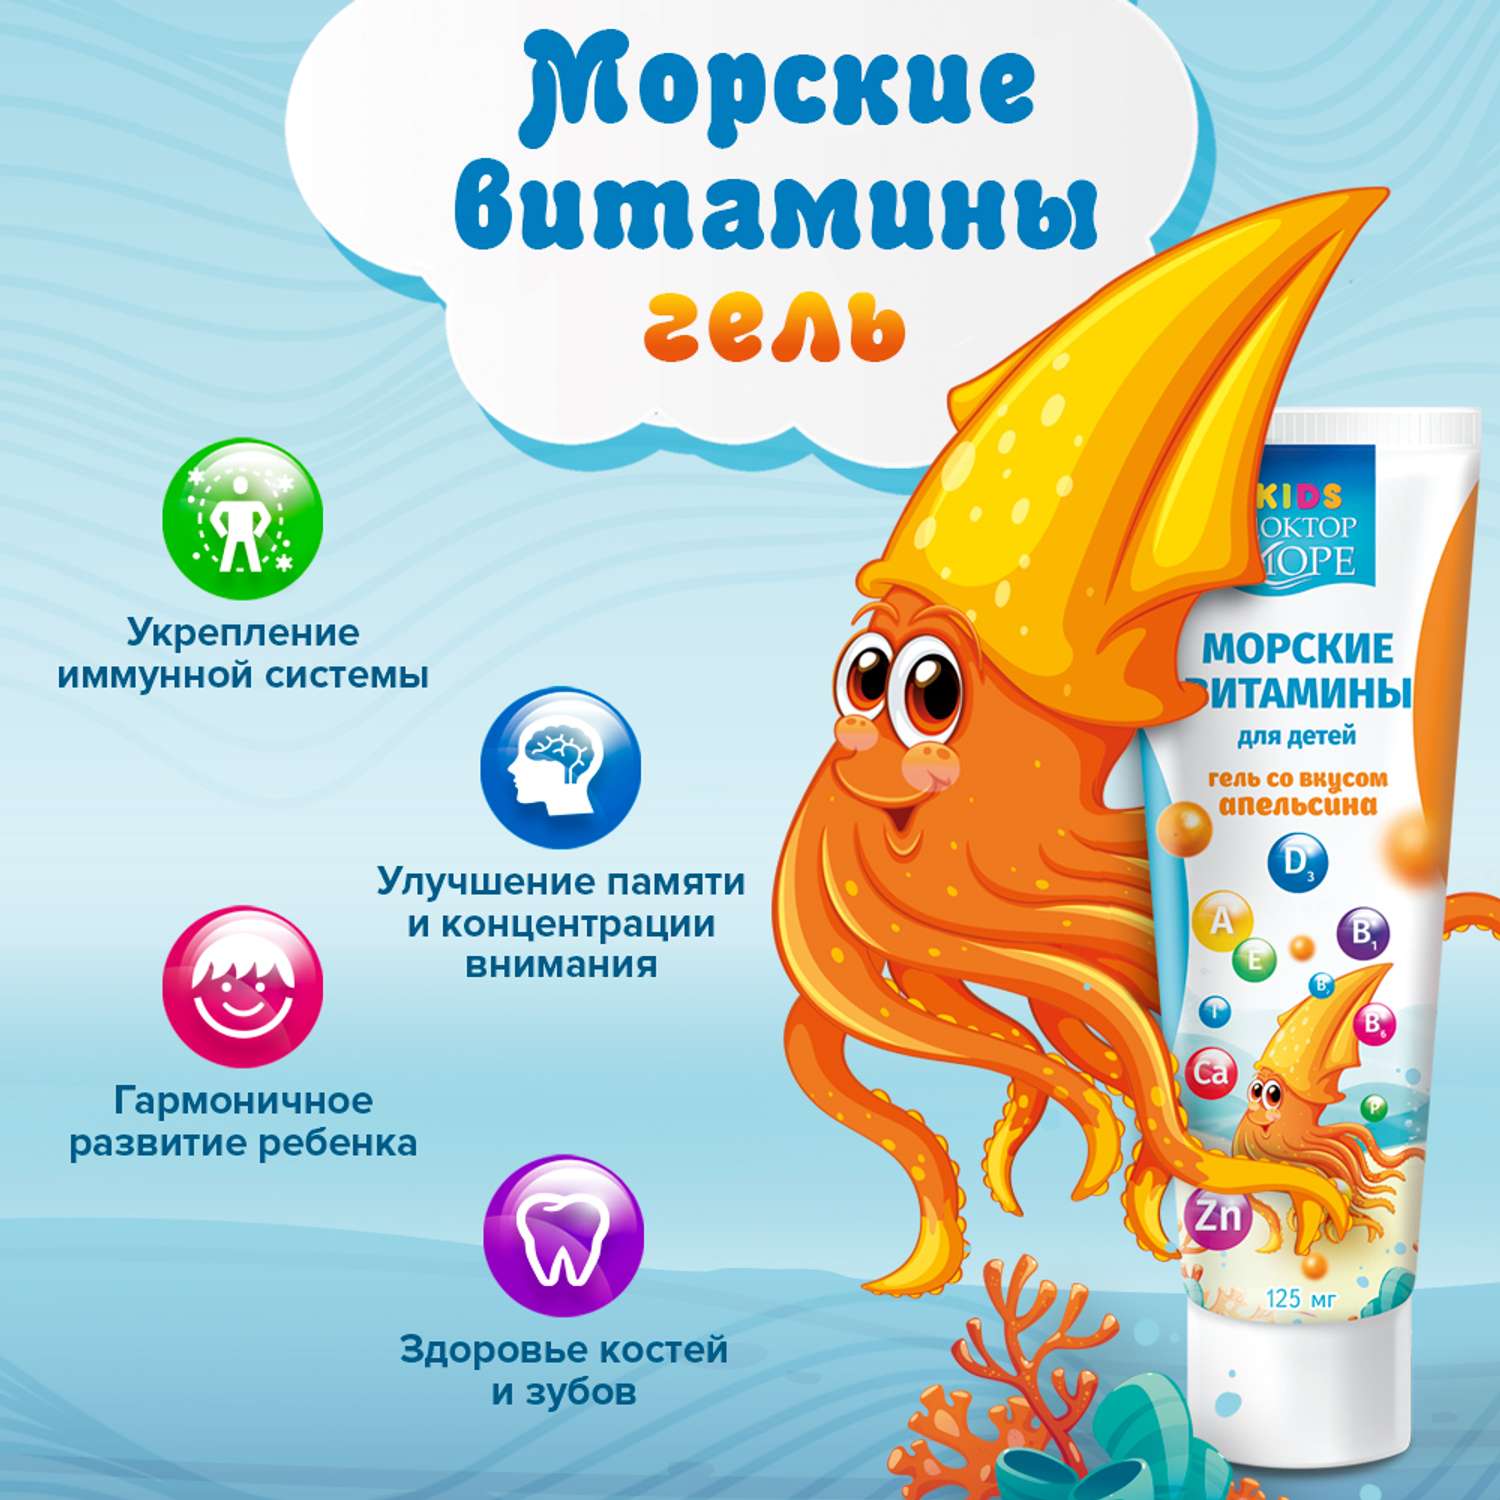 Морские витамины для детей Доктор Море гель со вкусом апельсина 125 мл - фото 3